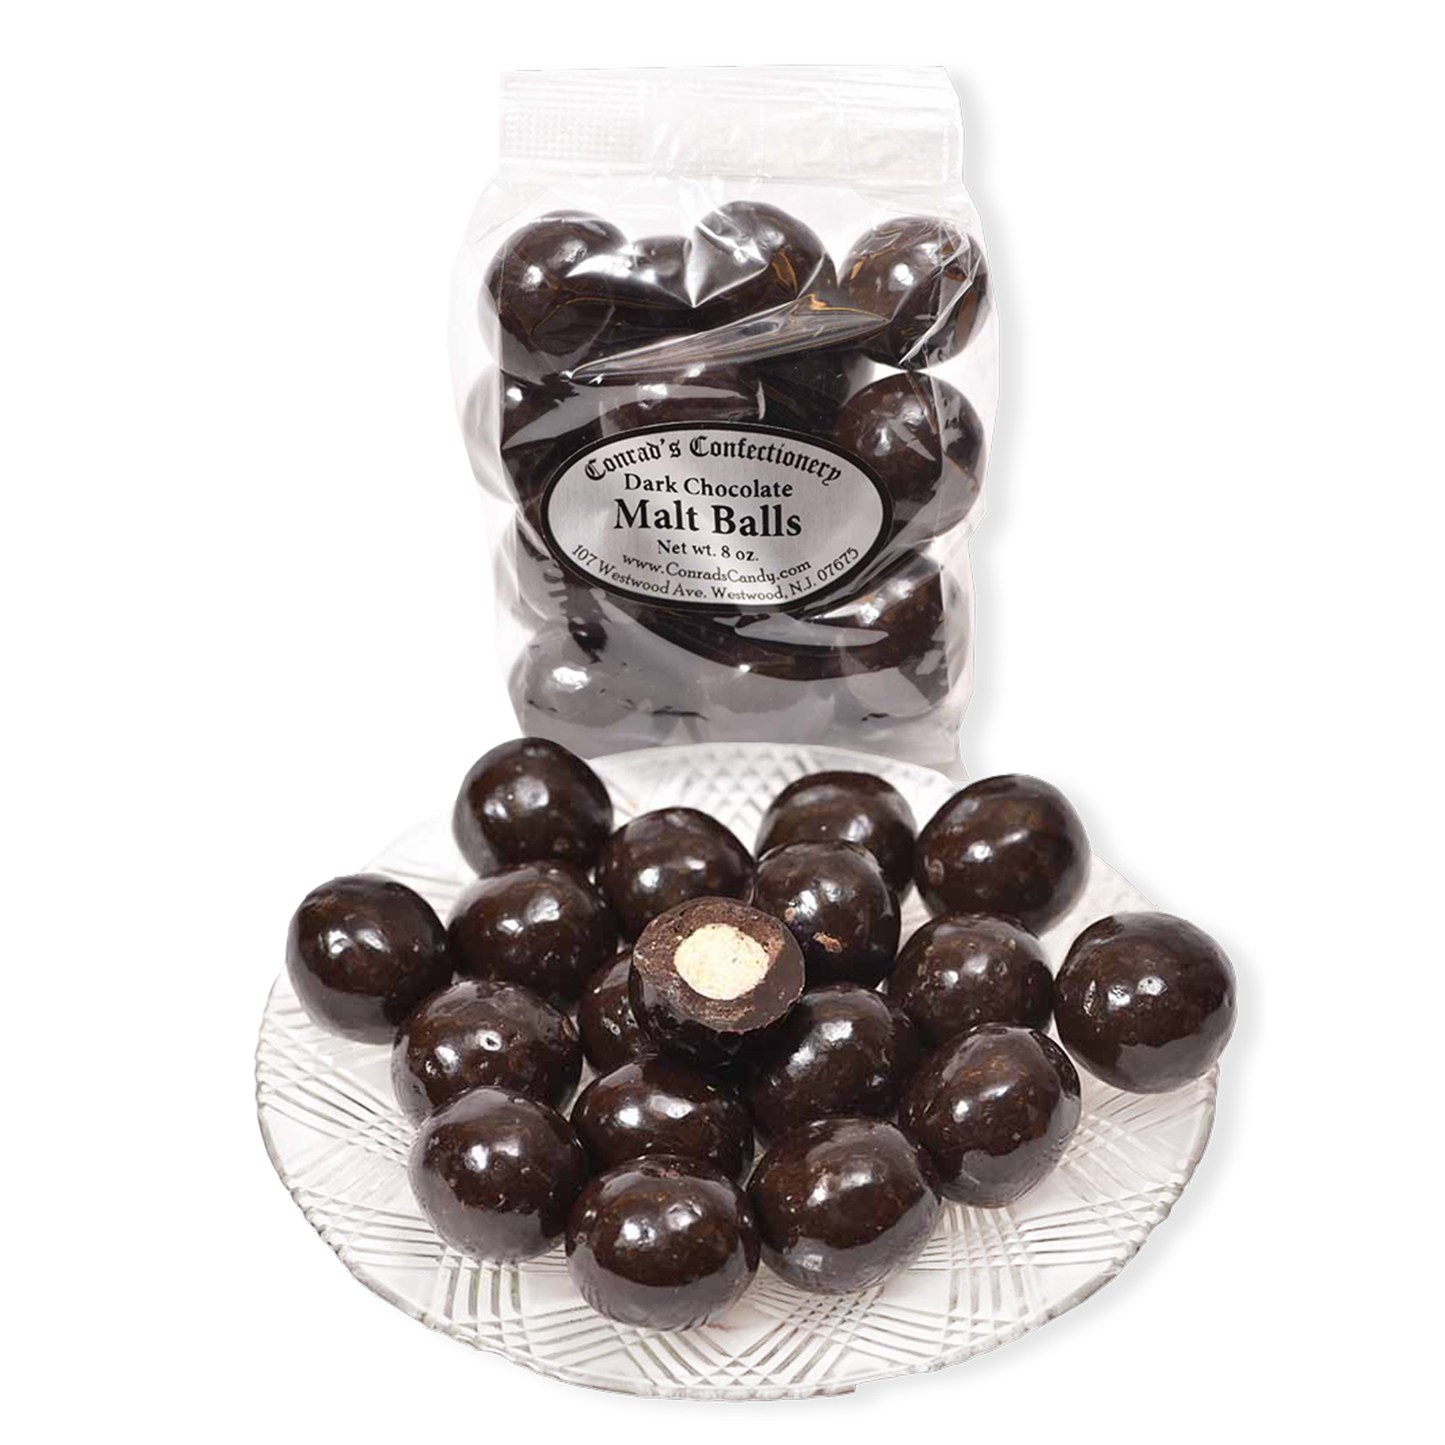 Dark Chocolate Malt Balls- 8 oz bag